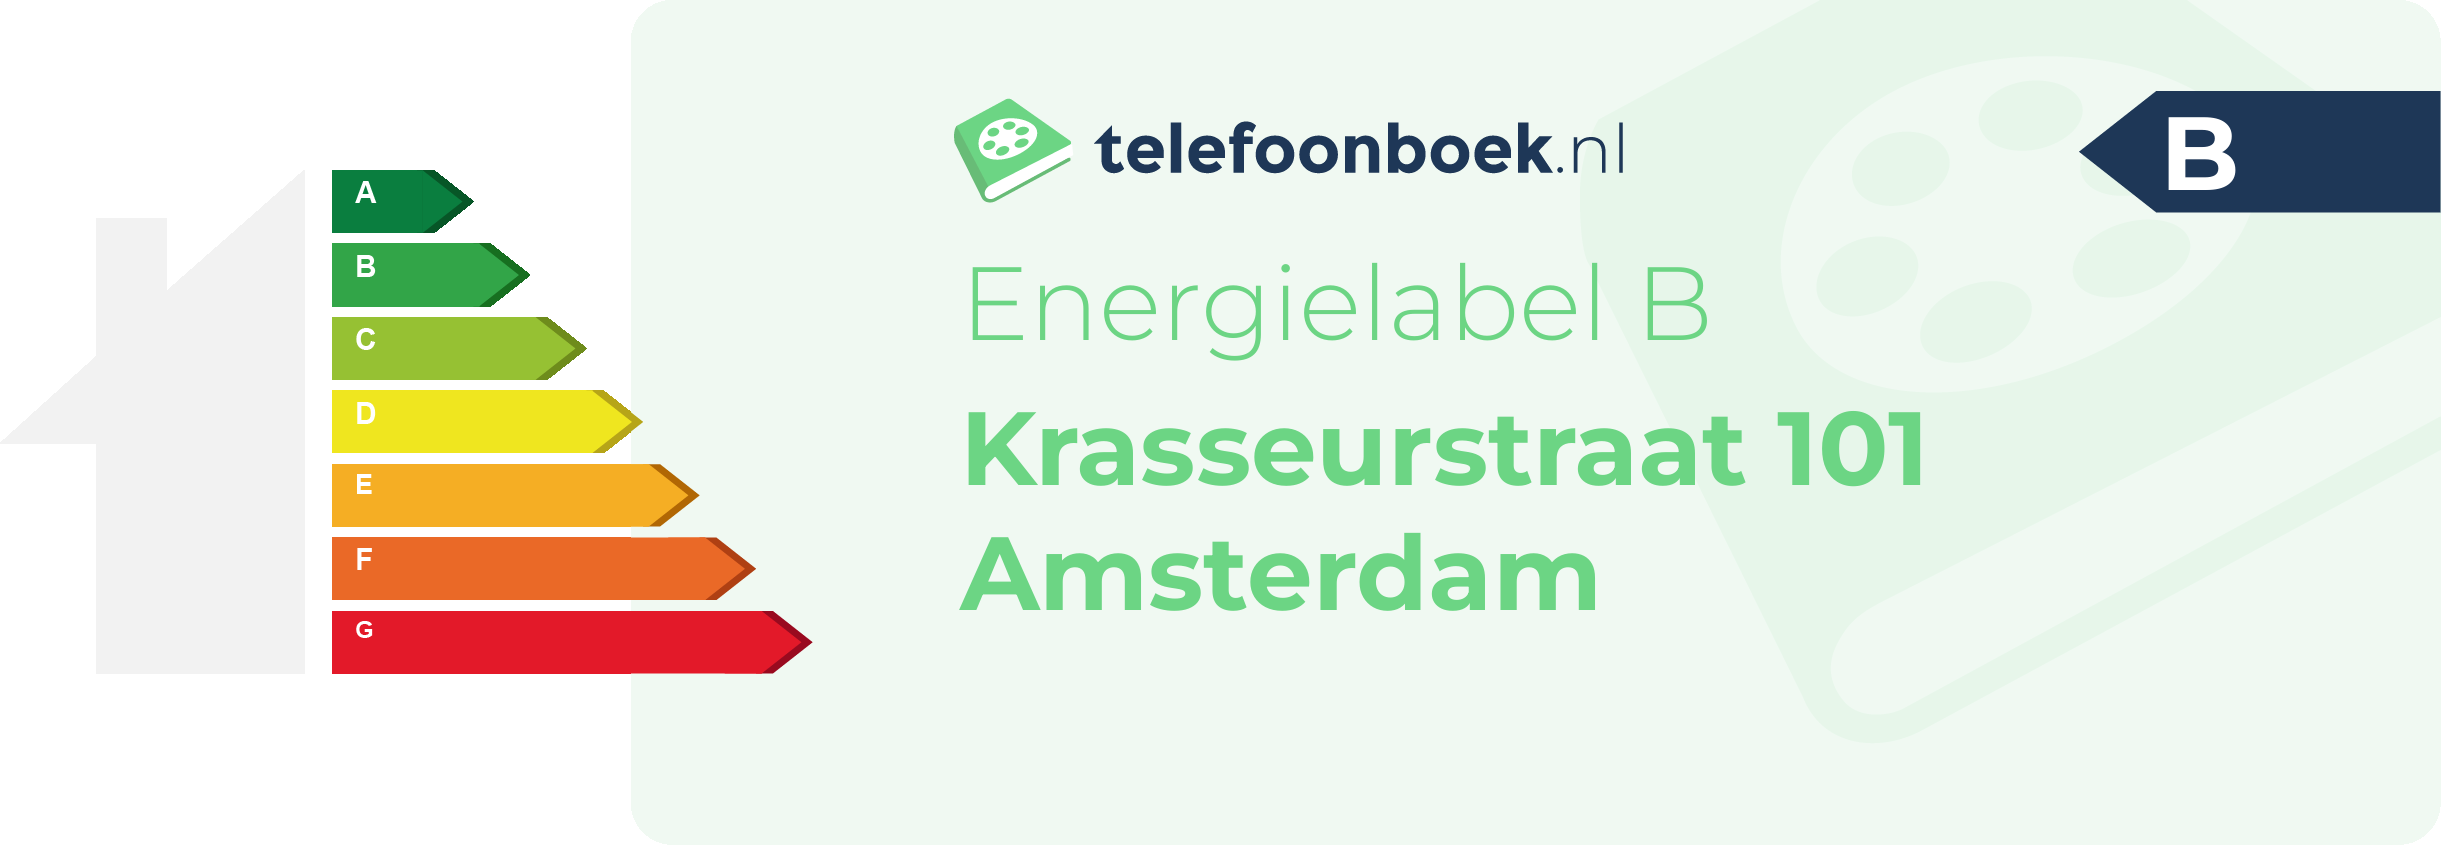 Energielabel Krasseurstraat 101 Amsterdam